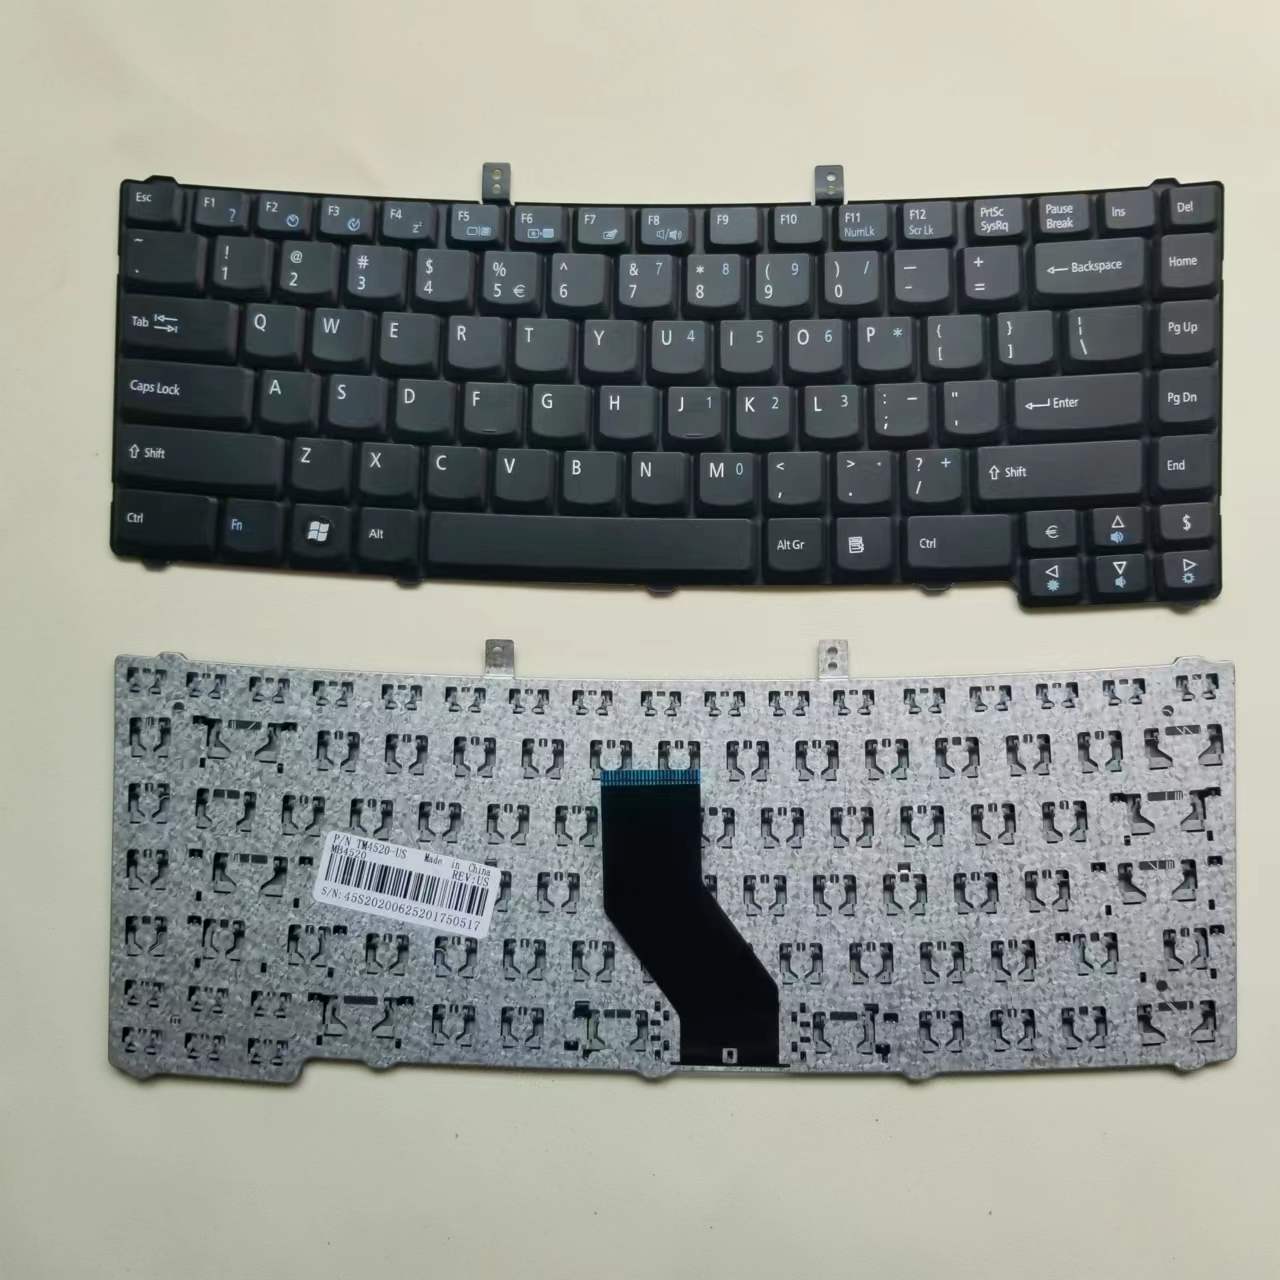 Laptop Keyboard For Acer Extensa 4220 4230 4420 4630 5220 5620 TM4520 TM5710 Series English US Version Black